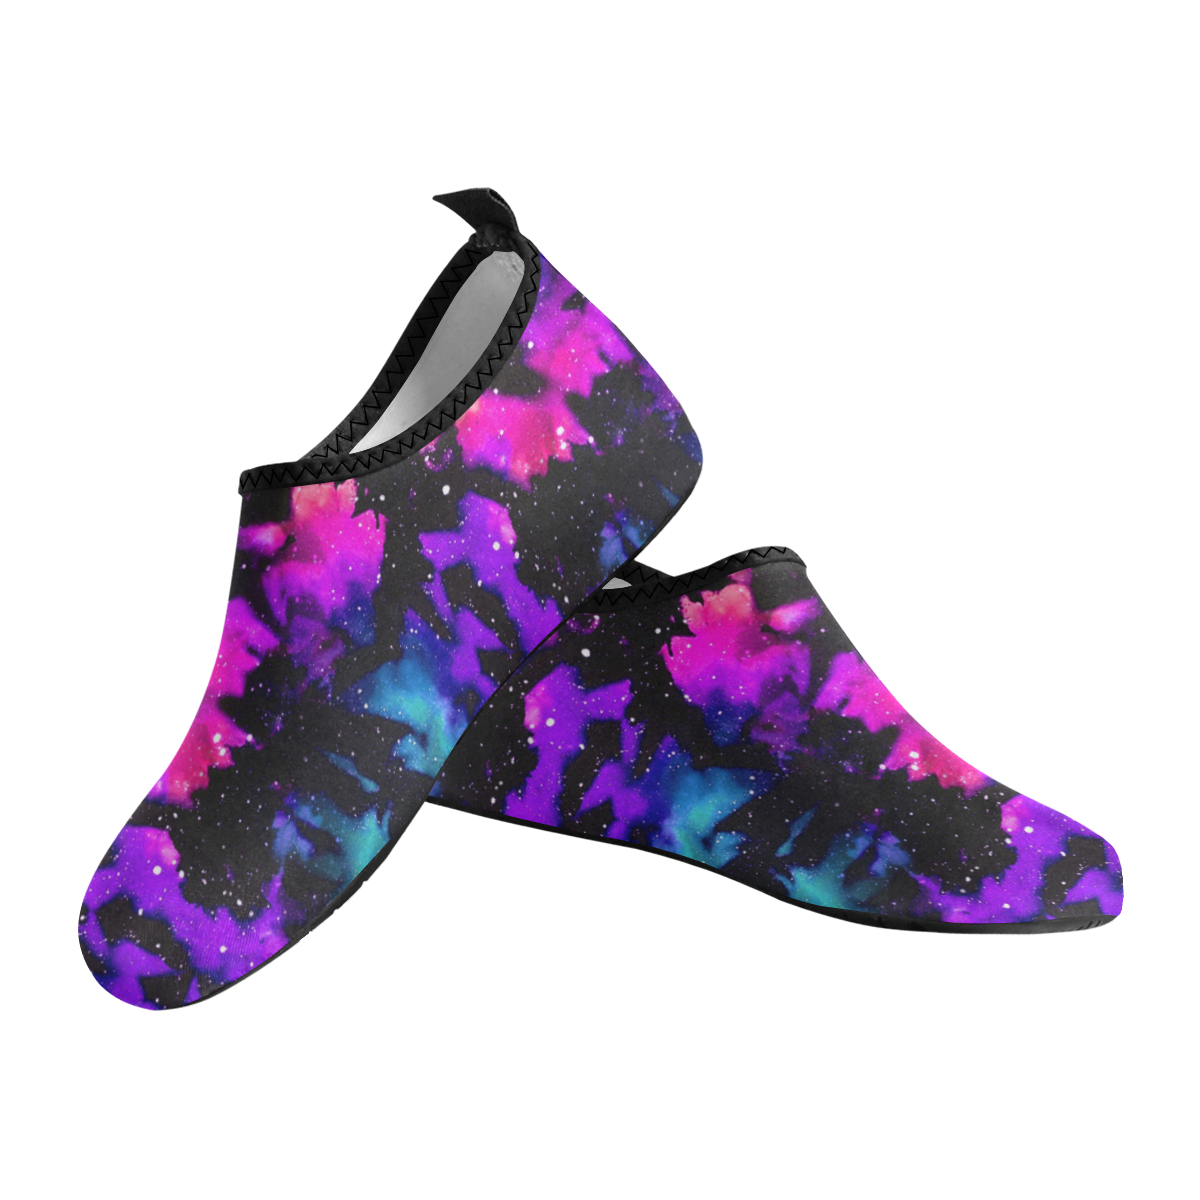 Dawn Tie Dye Galaxy Women's Slip-On Water Shoes (Model 056)